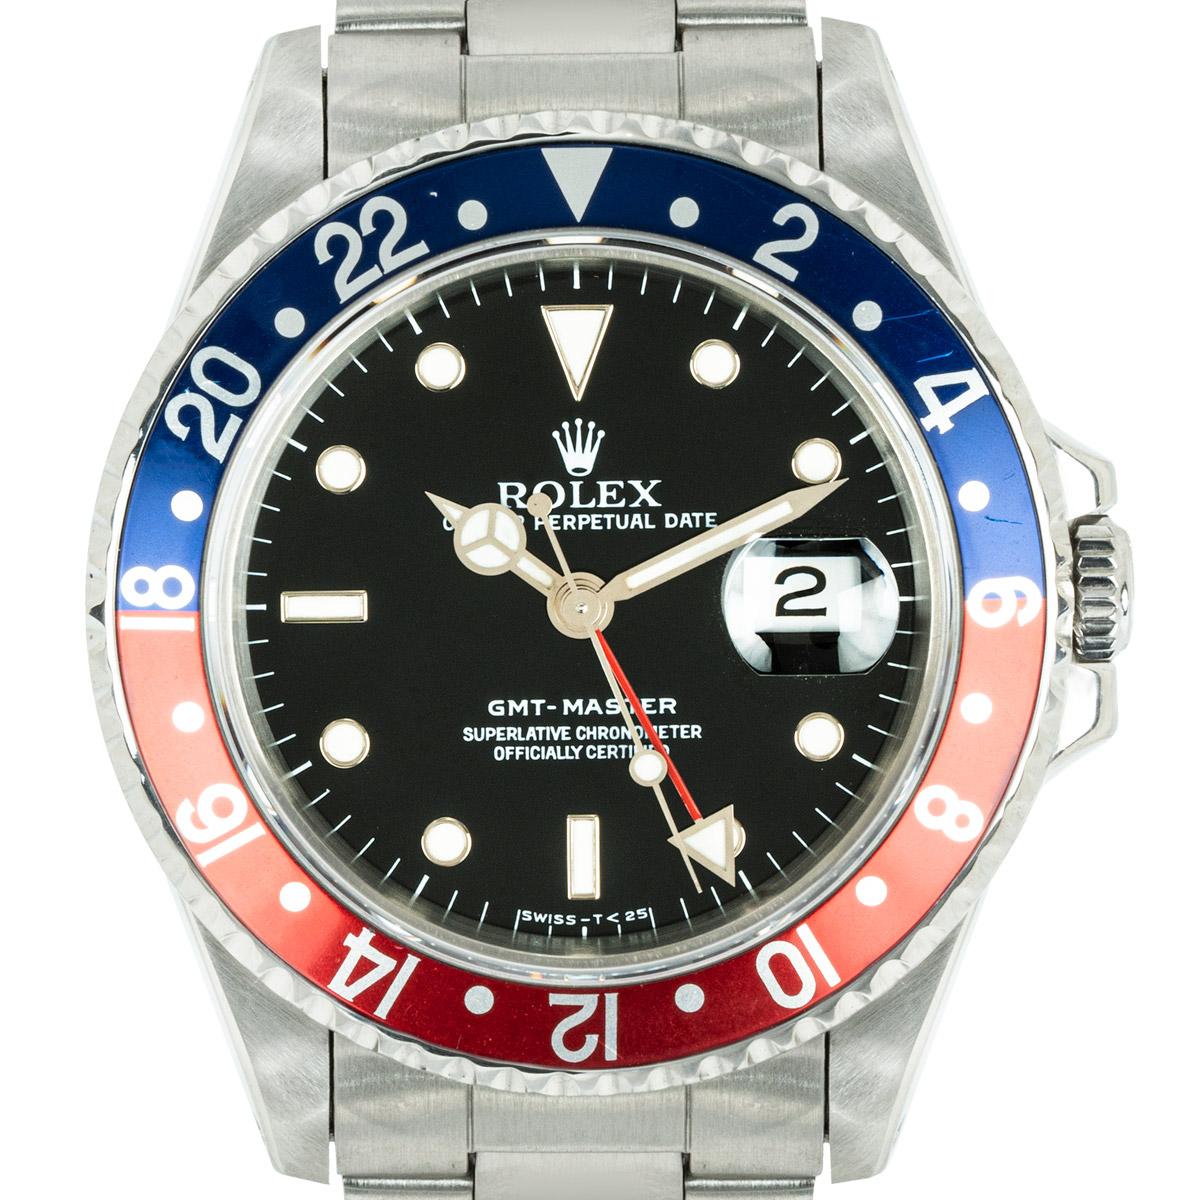 Une montre-bracelet GMT-Master Steele en acier inoxydable. Cadran noir avec index appliqués, guichet de date et aiguille rouge du second fuseau horaire. Le cadran est complété par une lunette tournante bidirectionnelle en acier inoxydable qui